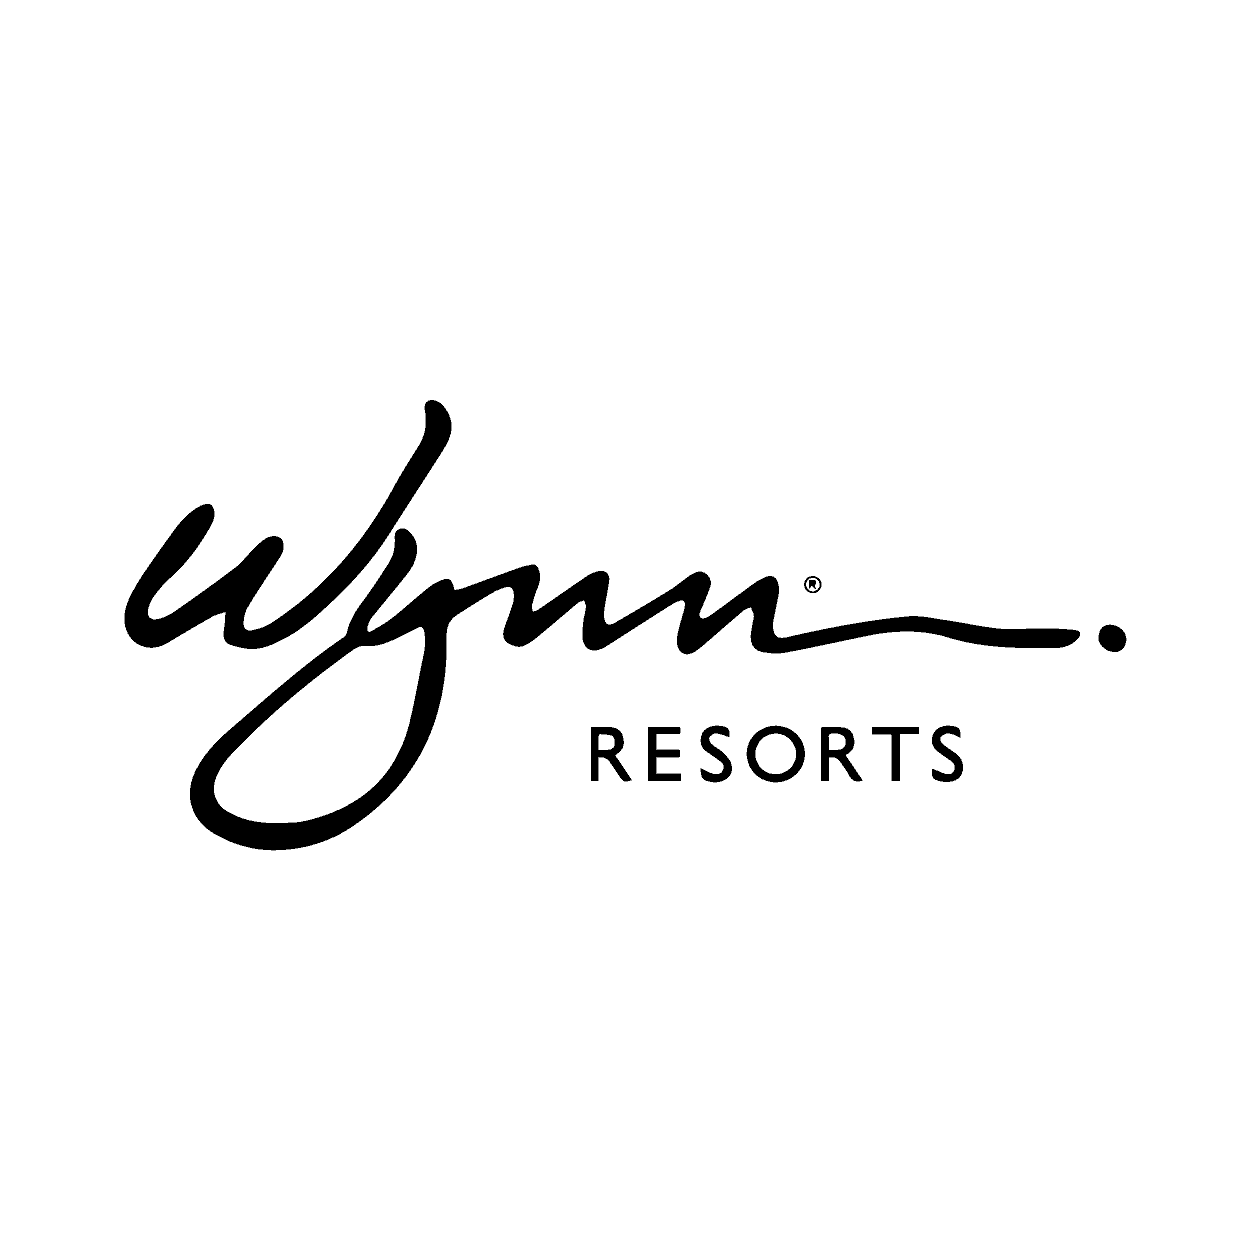 wynn resorts